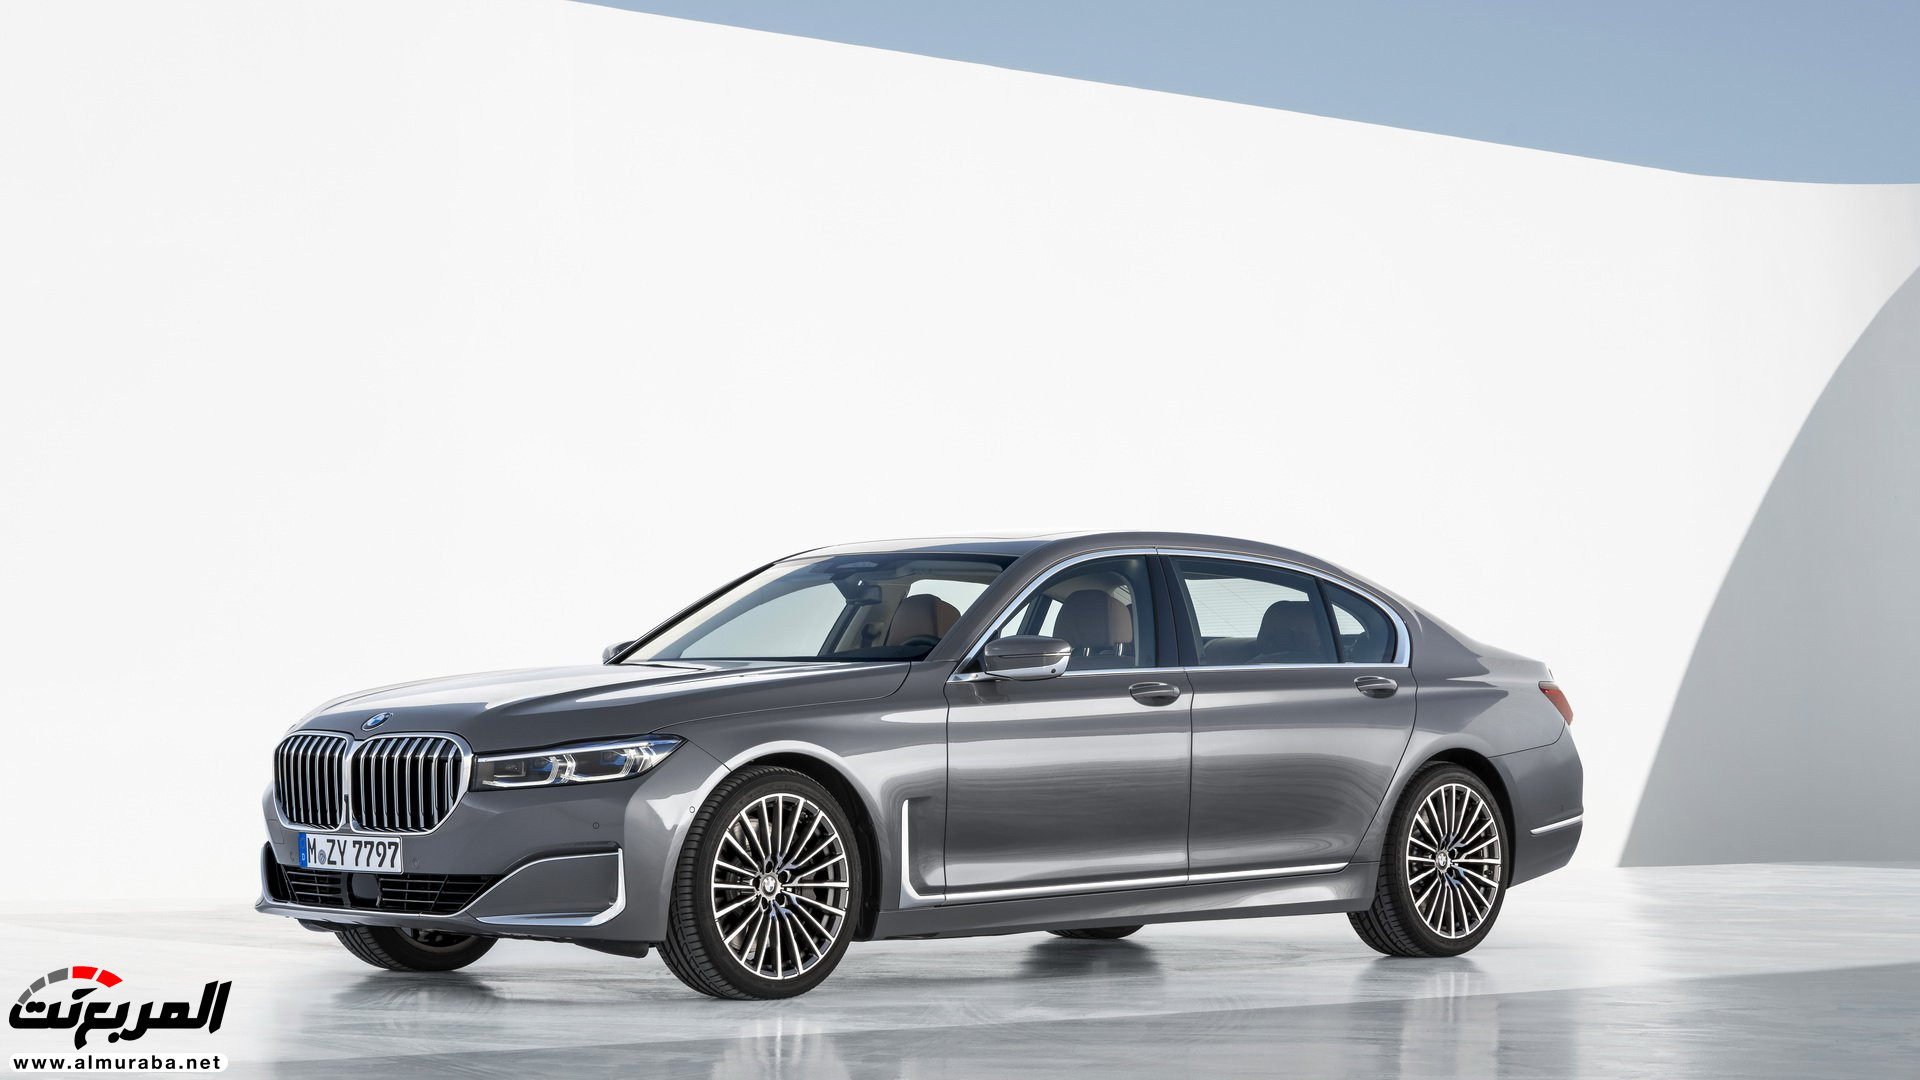 بي ام دبليو الفئة السابعة 2020 المحدثة تكشف نفسها رسمياً "صور ومواصفات" BMW 7 Series 56